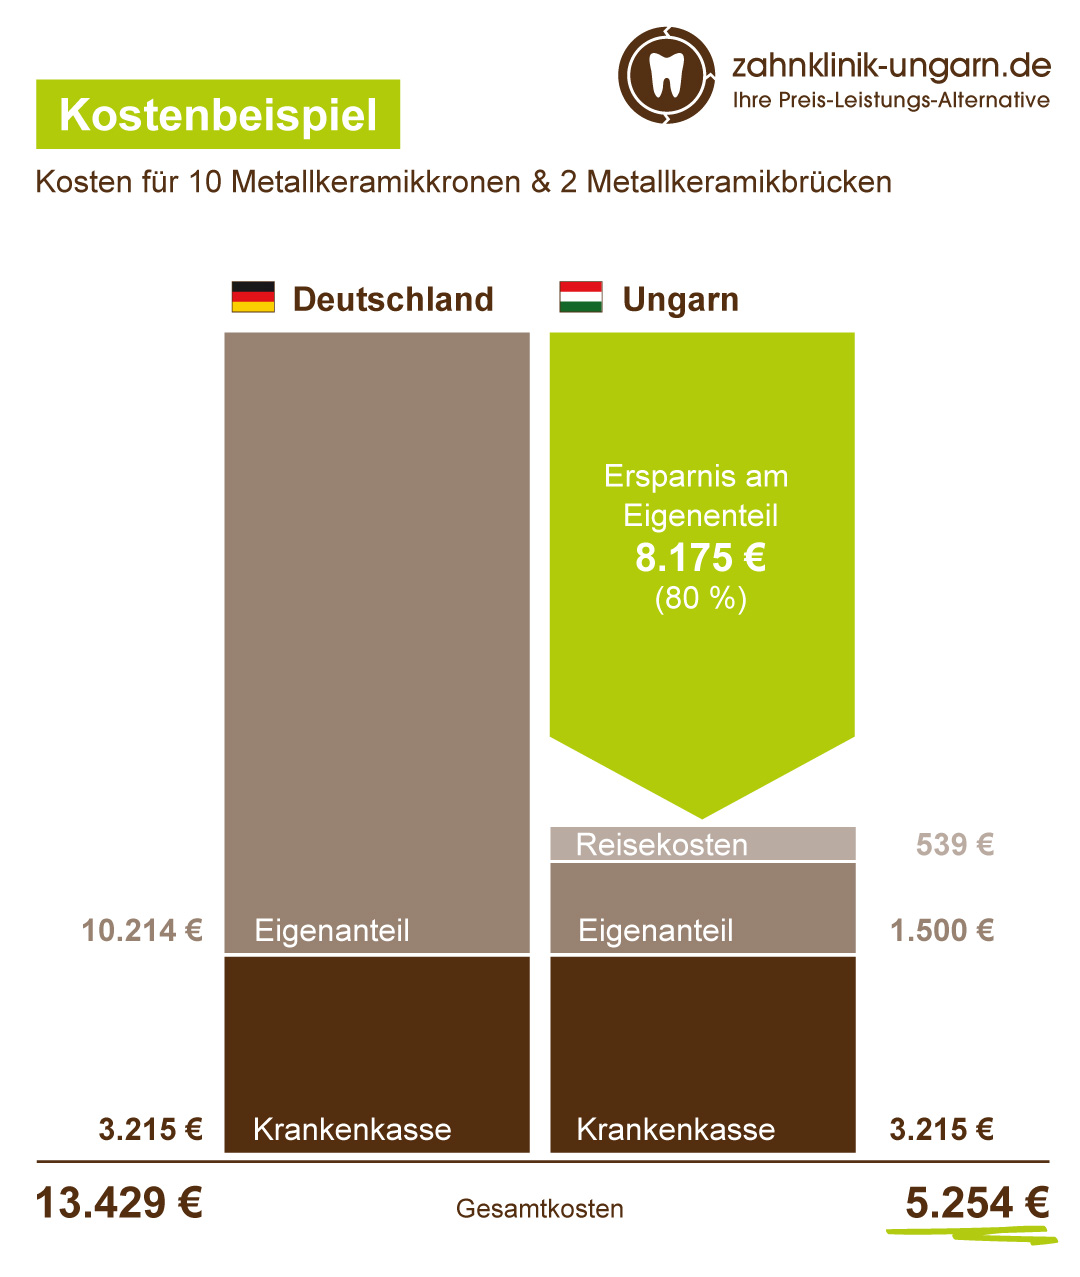 Kosten für Metallkeramikkronen und Metallkeramikbrücken, Schaubild mit Kostenvergleich Ungarn und Deutschland